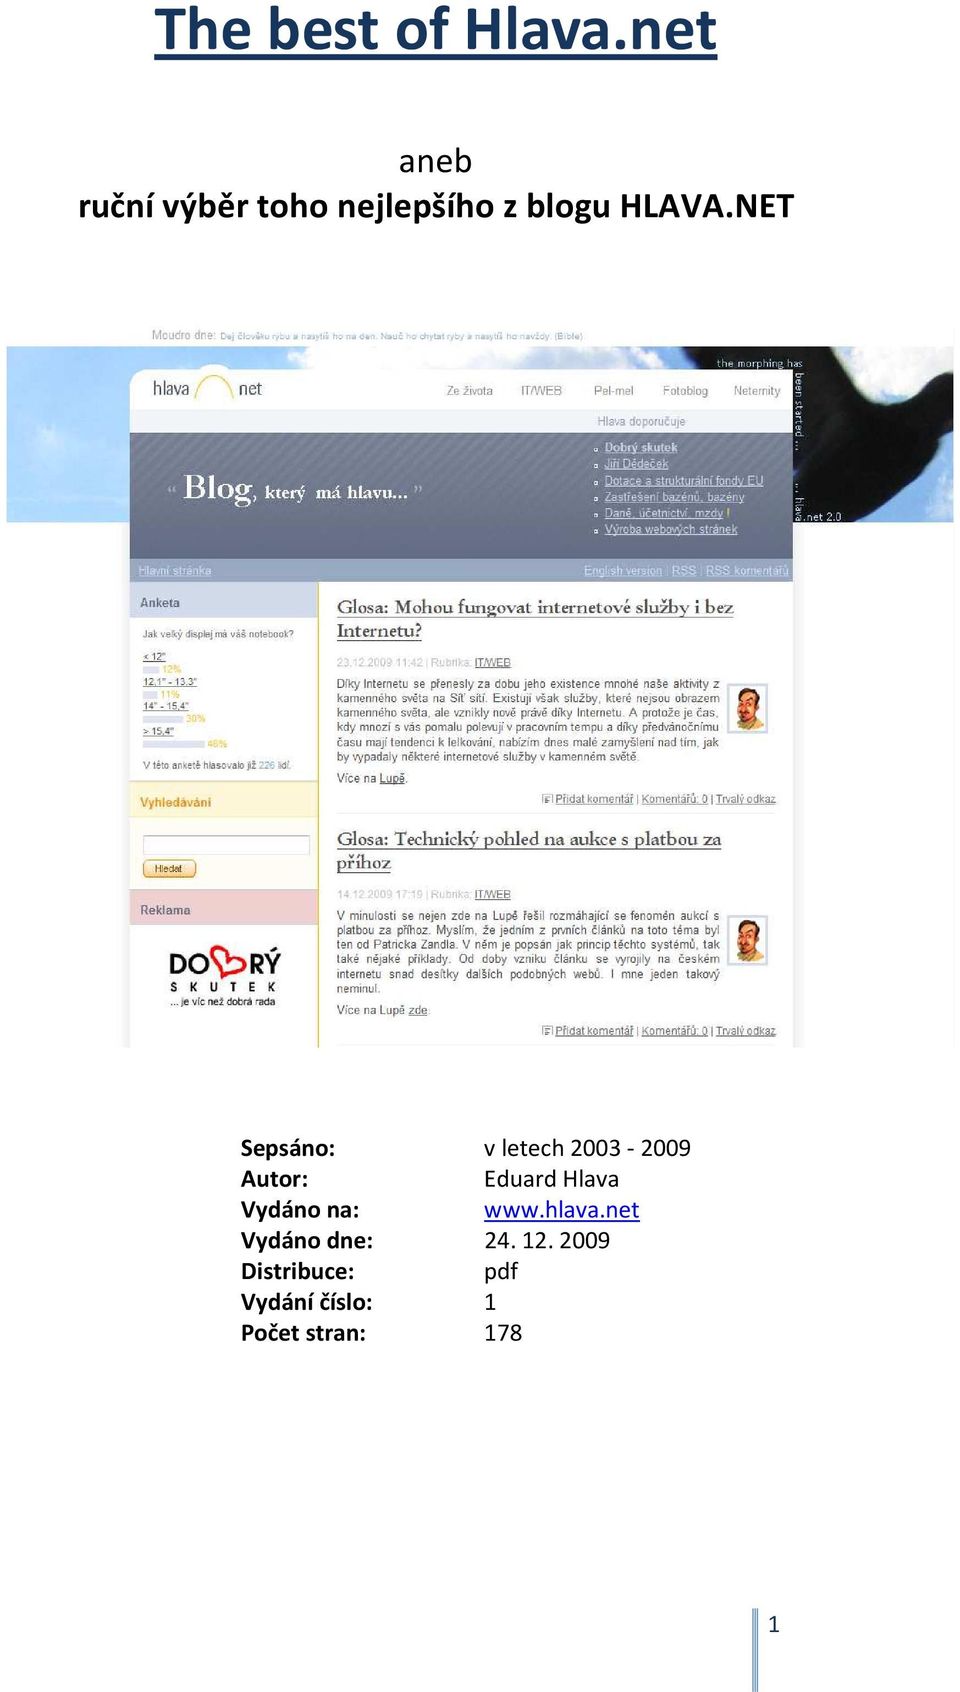 NET Sepsáno: v letech 2003-2009 Autor: Eduard Hlava